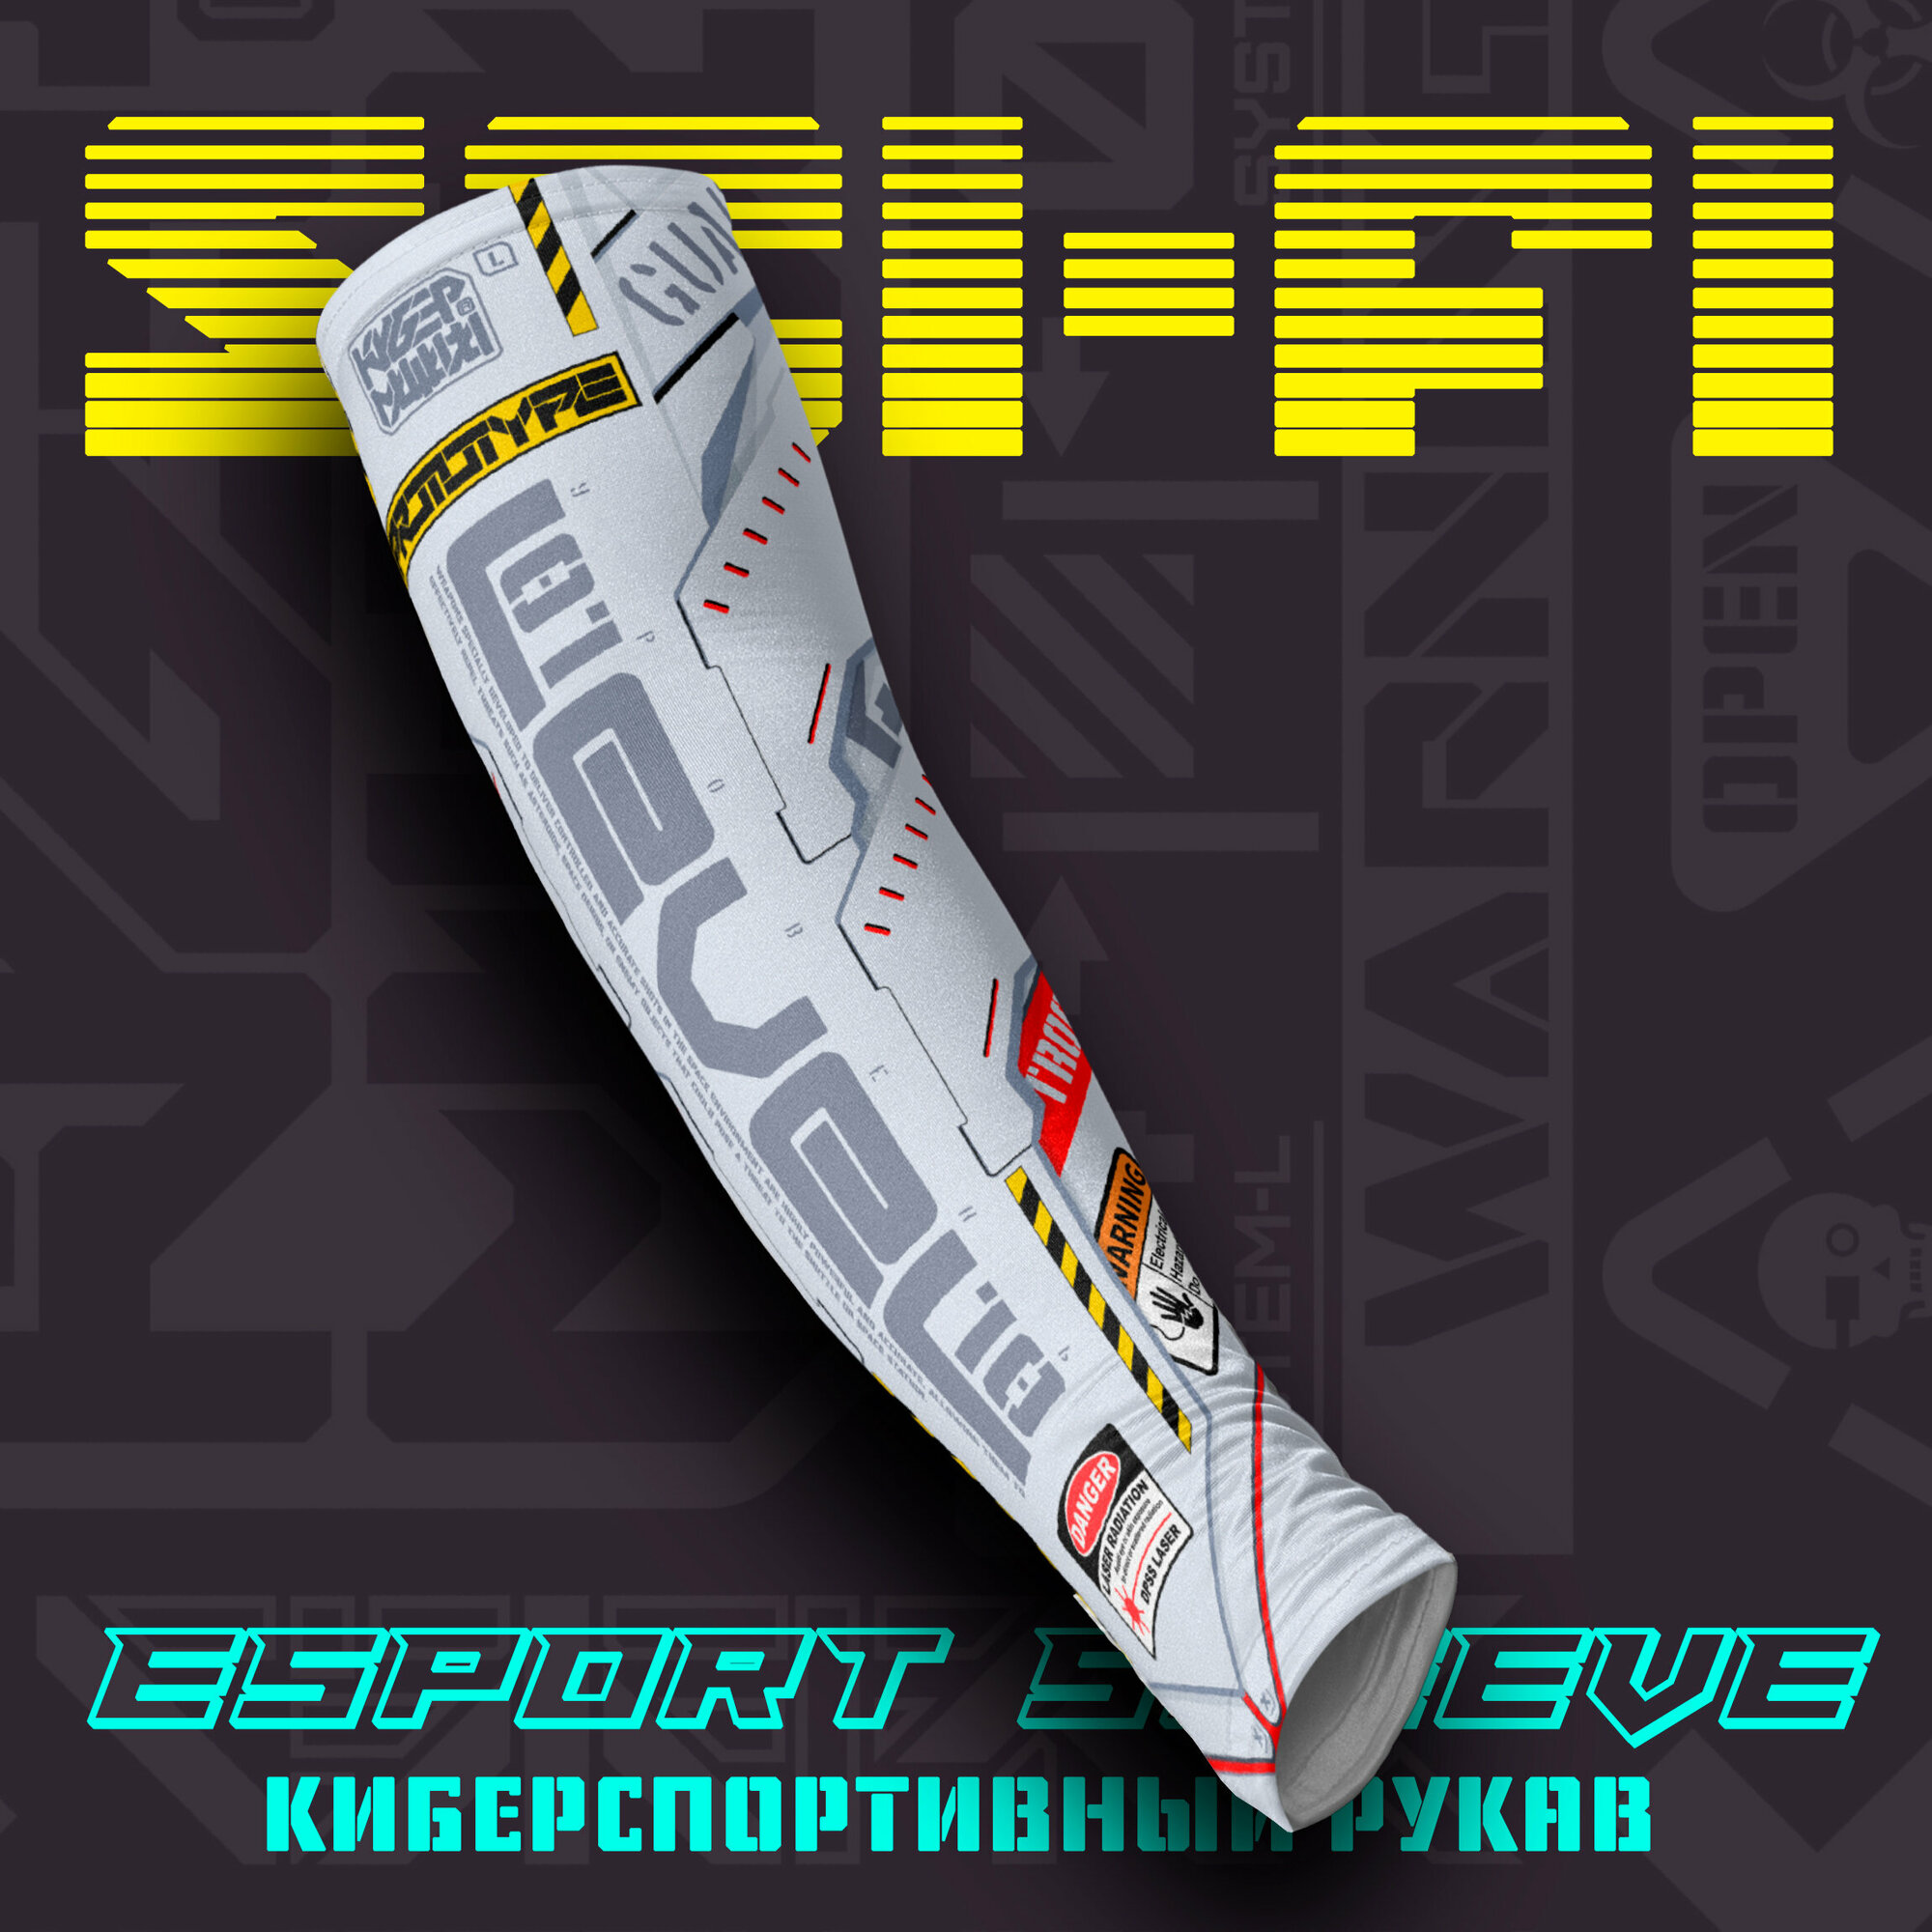 Киберспортивный рукав Sci-Fi. Стильный игровой аксессуар в стиле Starfield для киберспортсмена и геймера.